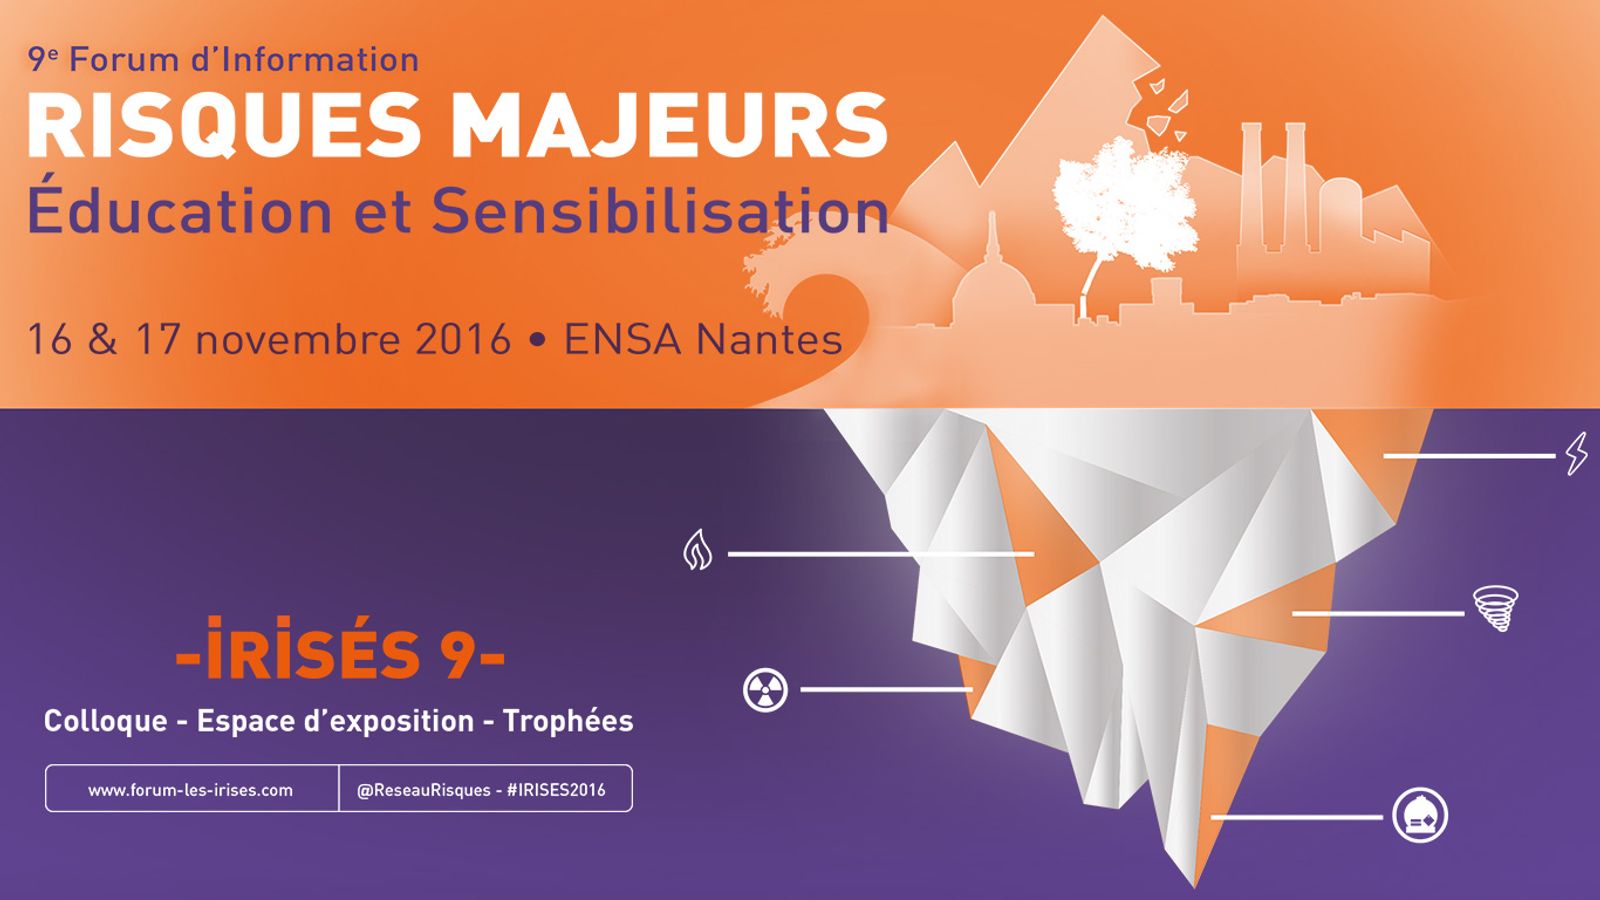 9e Forum d’Information sur les Risques majeurs, Éducation et Sensibilisation (IRISÉS) à Nantes